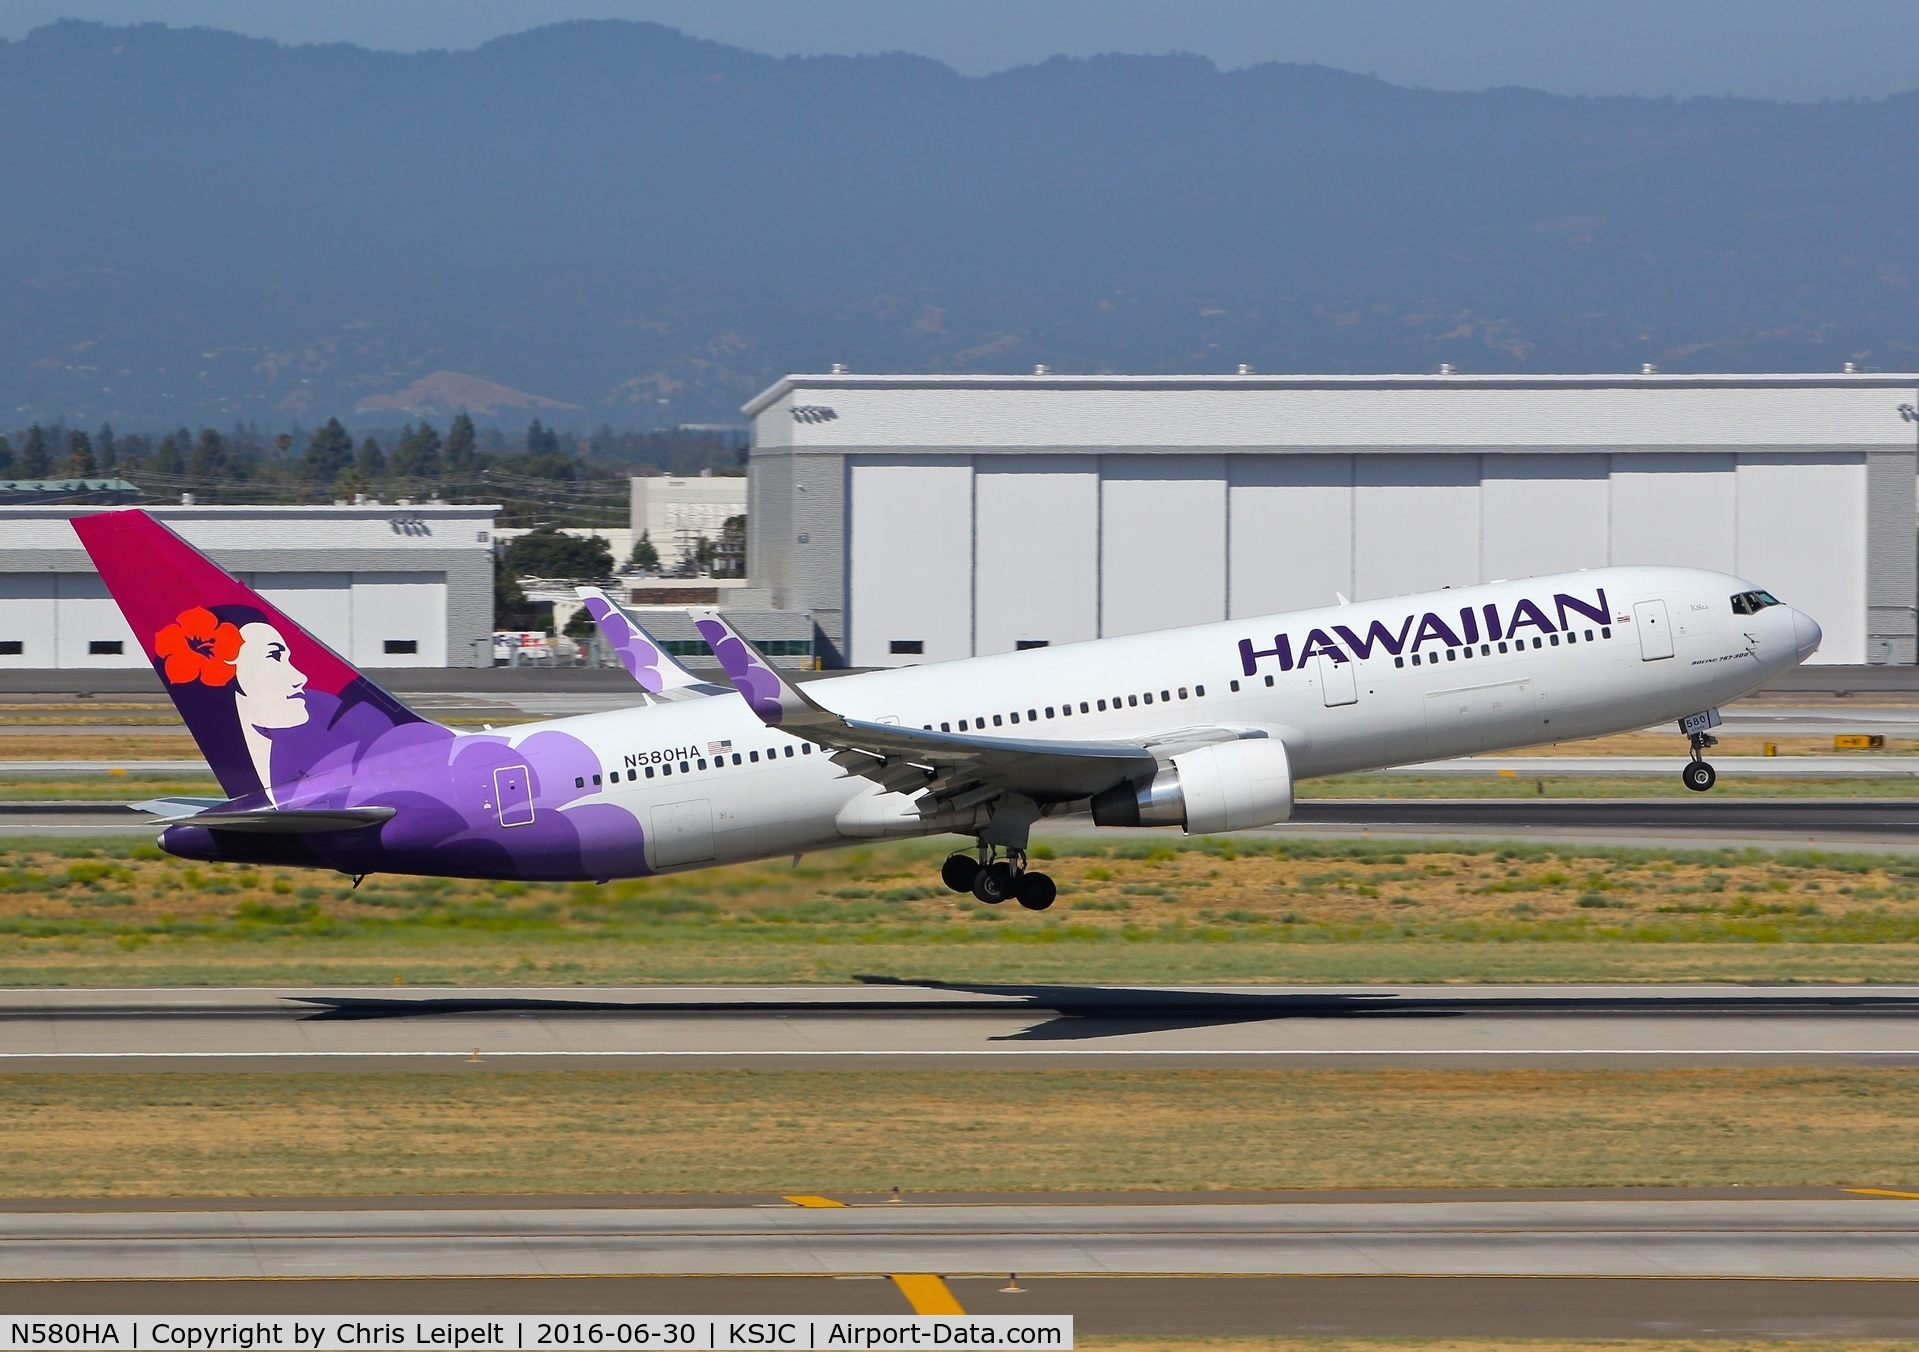 N580HA, 2001 Boeing 767-33A C/N 28140, Hawaiian Airlines departing in their 2001 Boeing 767-300 at San Jose International Airport, CA.